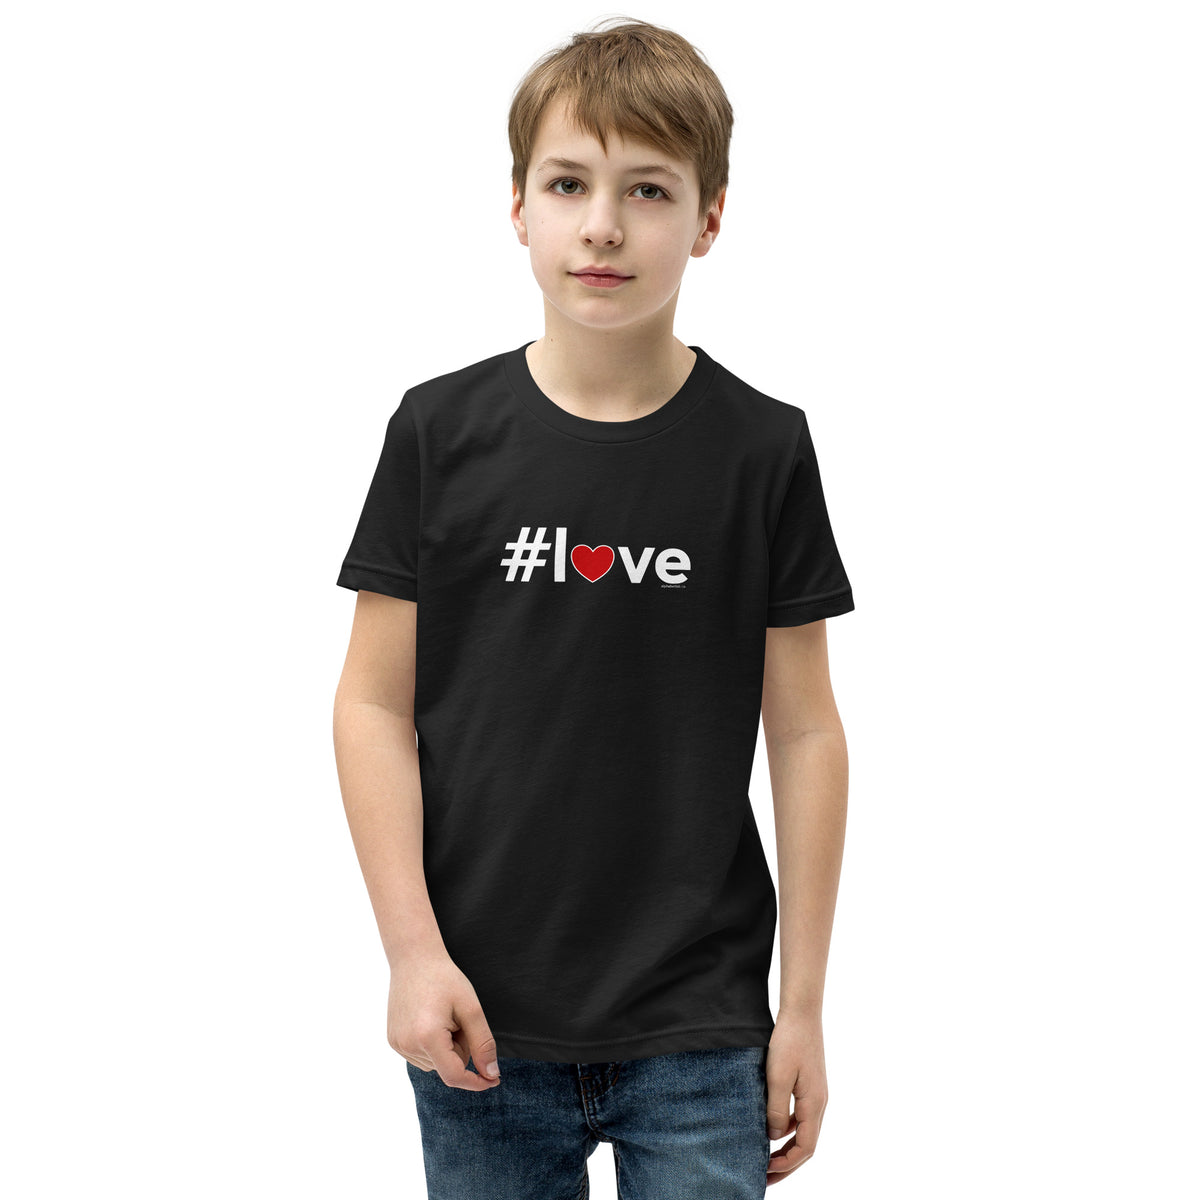 Hashtag Love Heart Kids Valentine’s Day T-Shirt